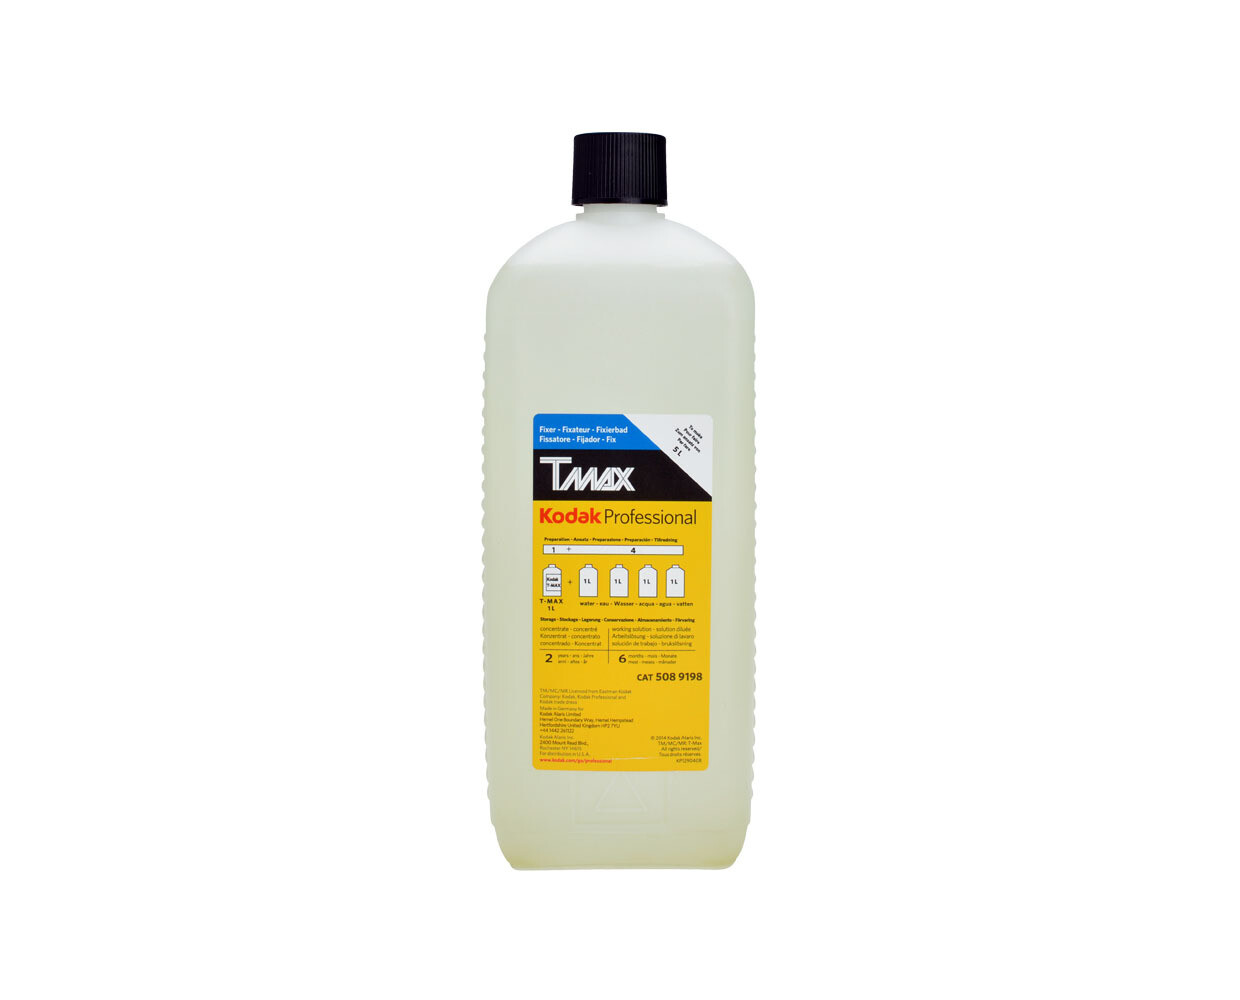 Kodak T-MAX Fix for 5 Liter (5089198) - EXPIRED 04/2022